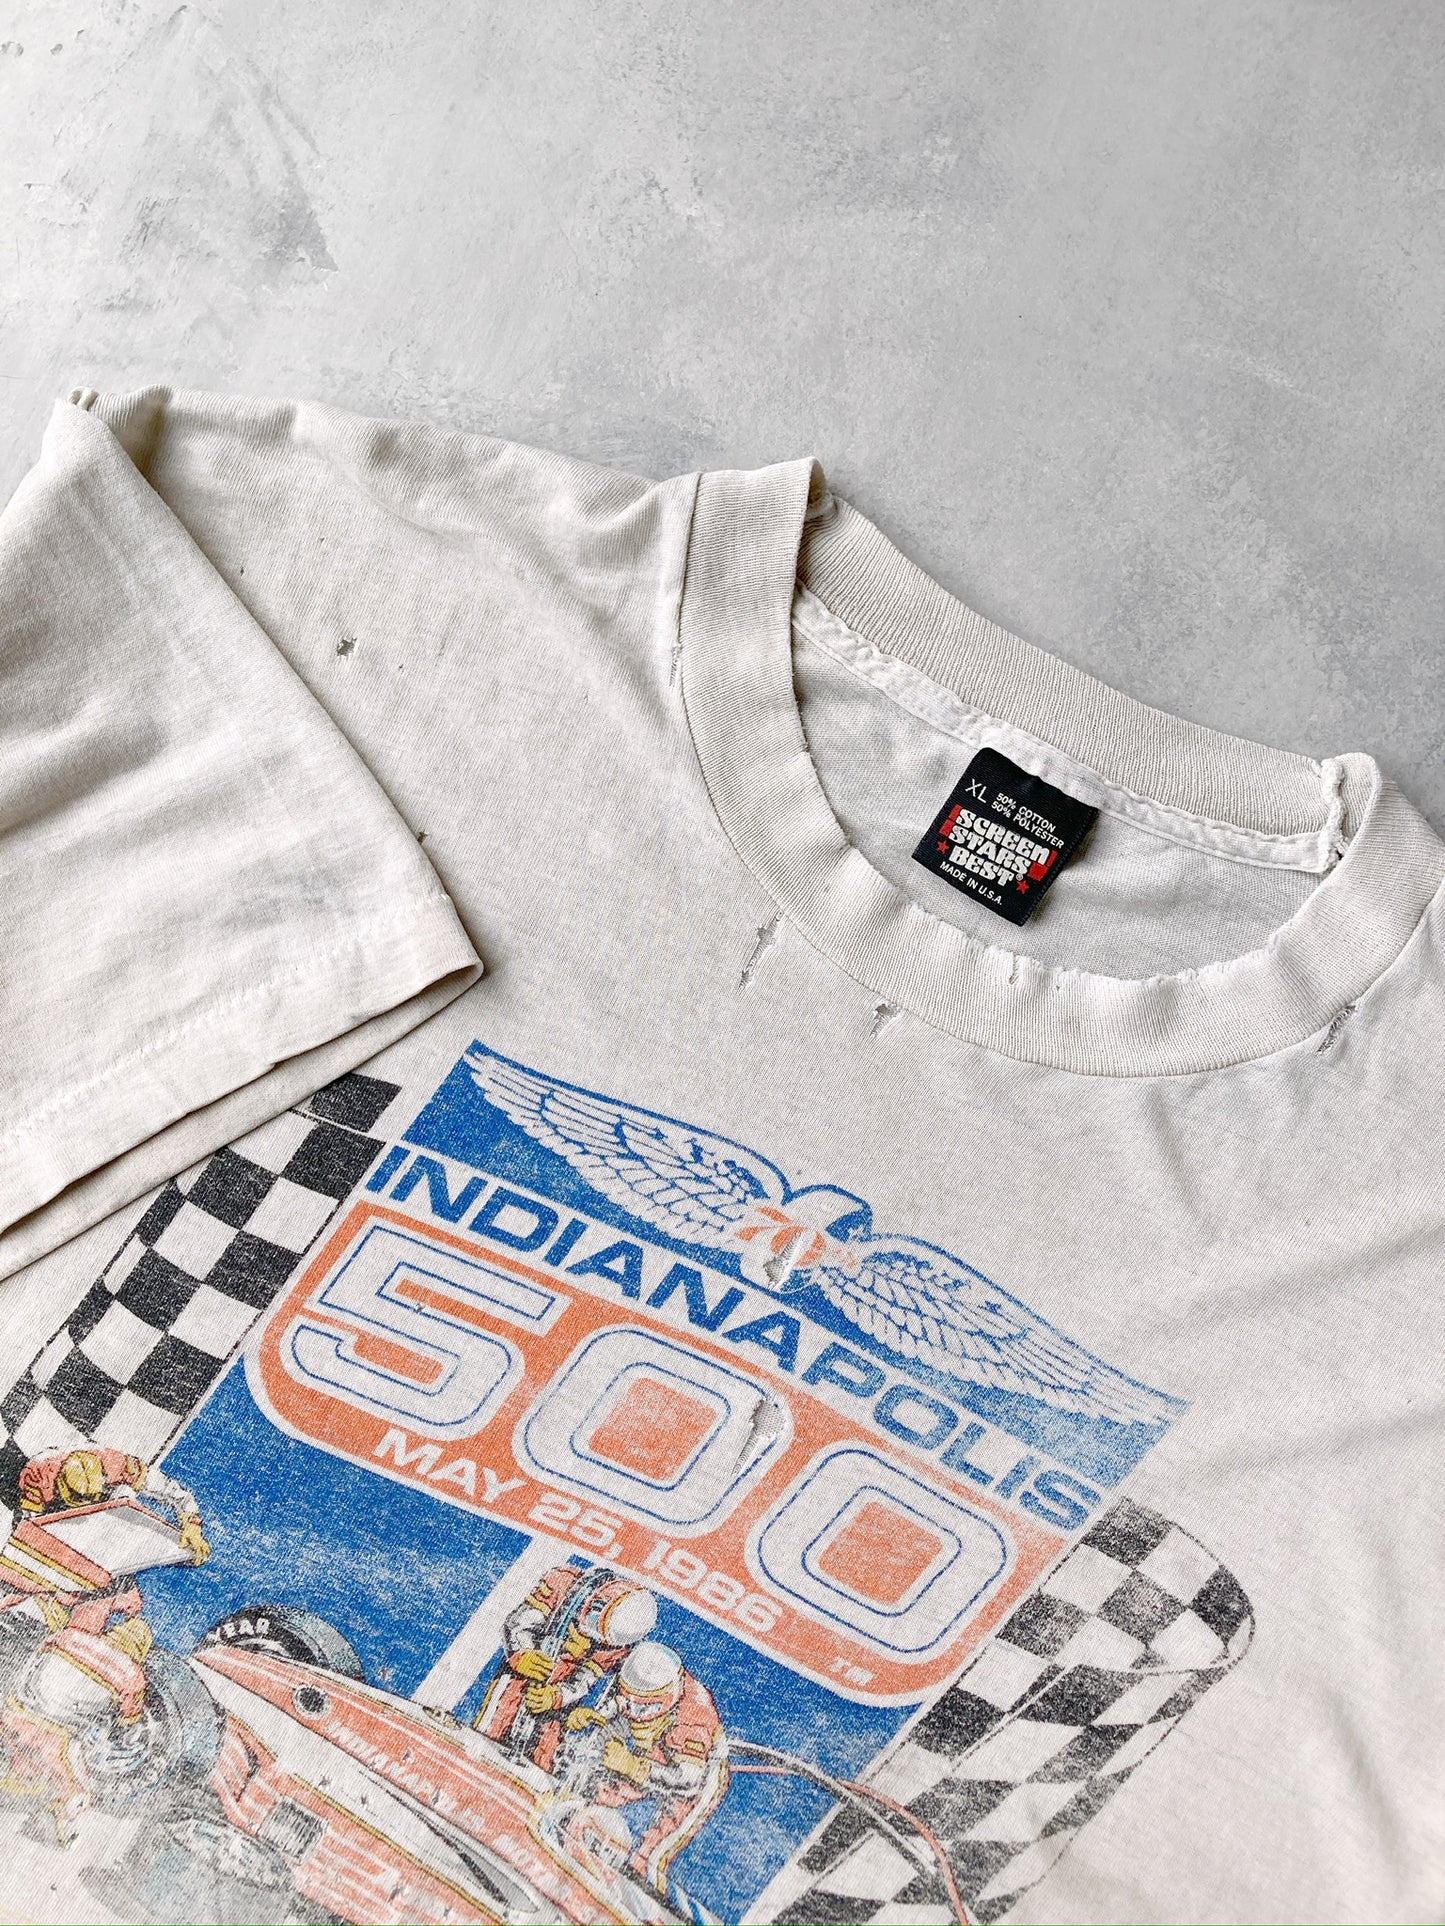 Indianapolis 500 T-Shirt '86 - XL